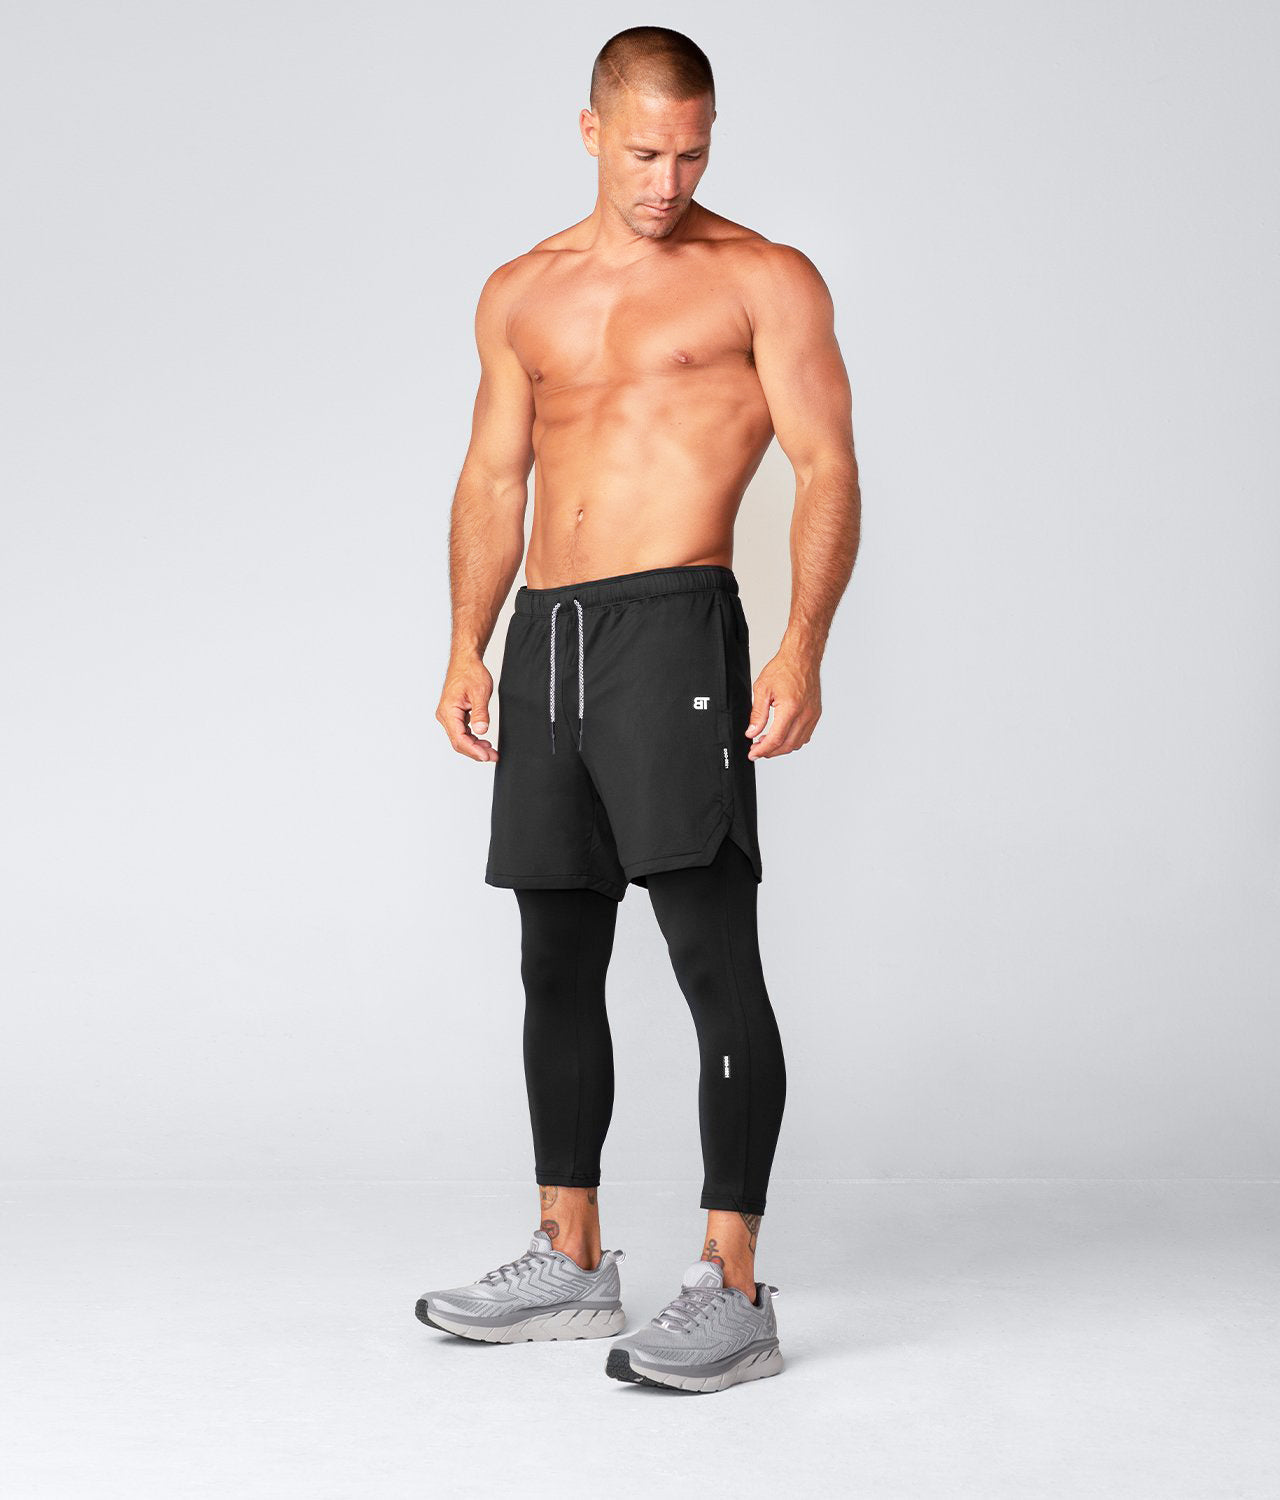 Mens Workout Shorts, Mens Athletic Shorts